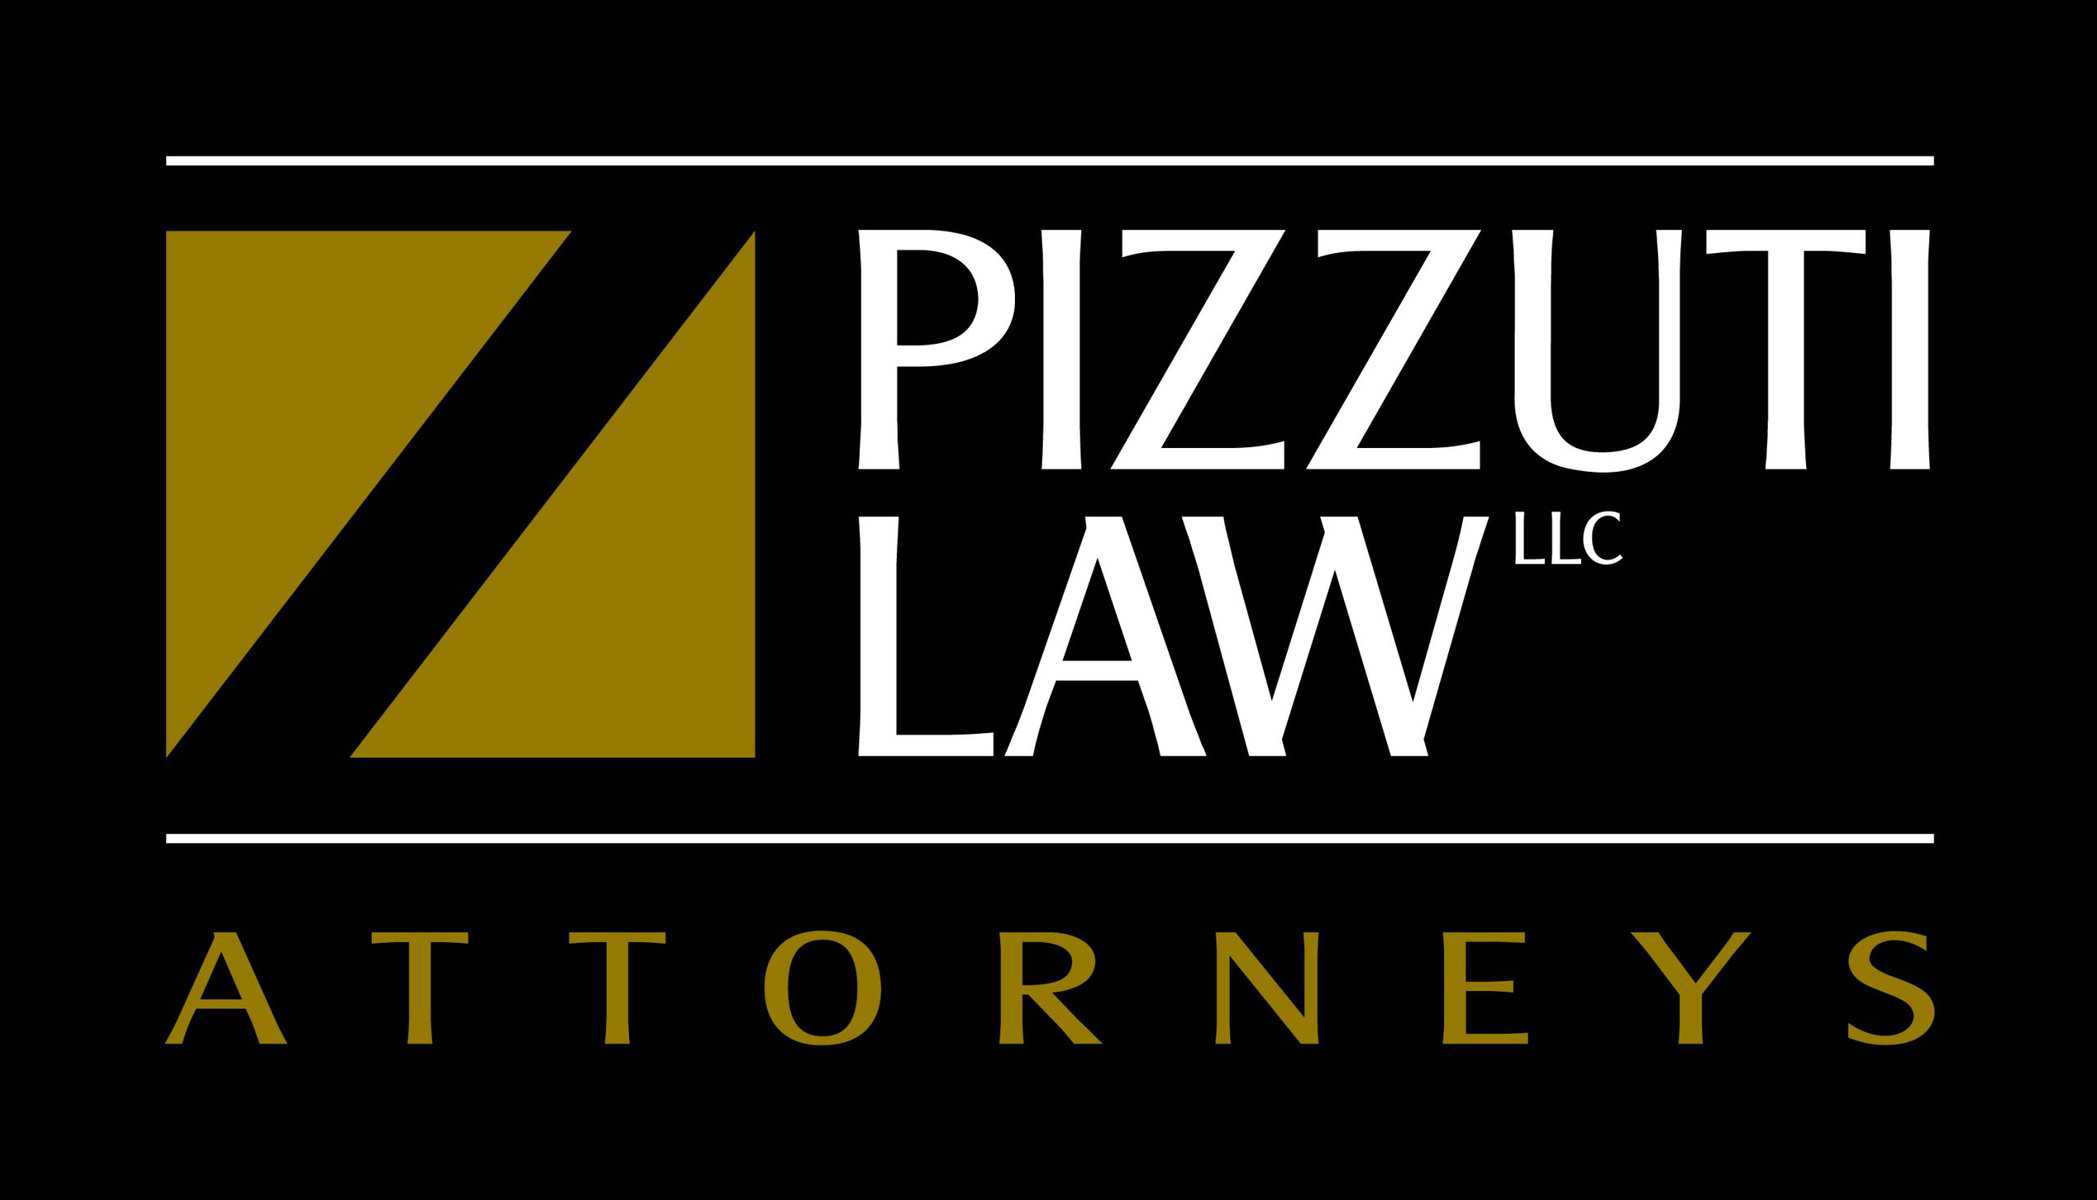 Pizzuti Law LLC